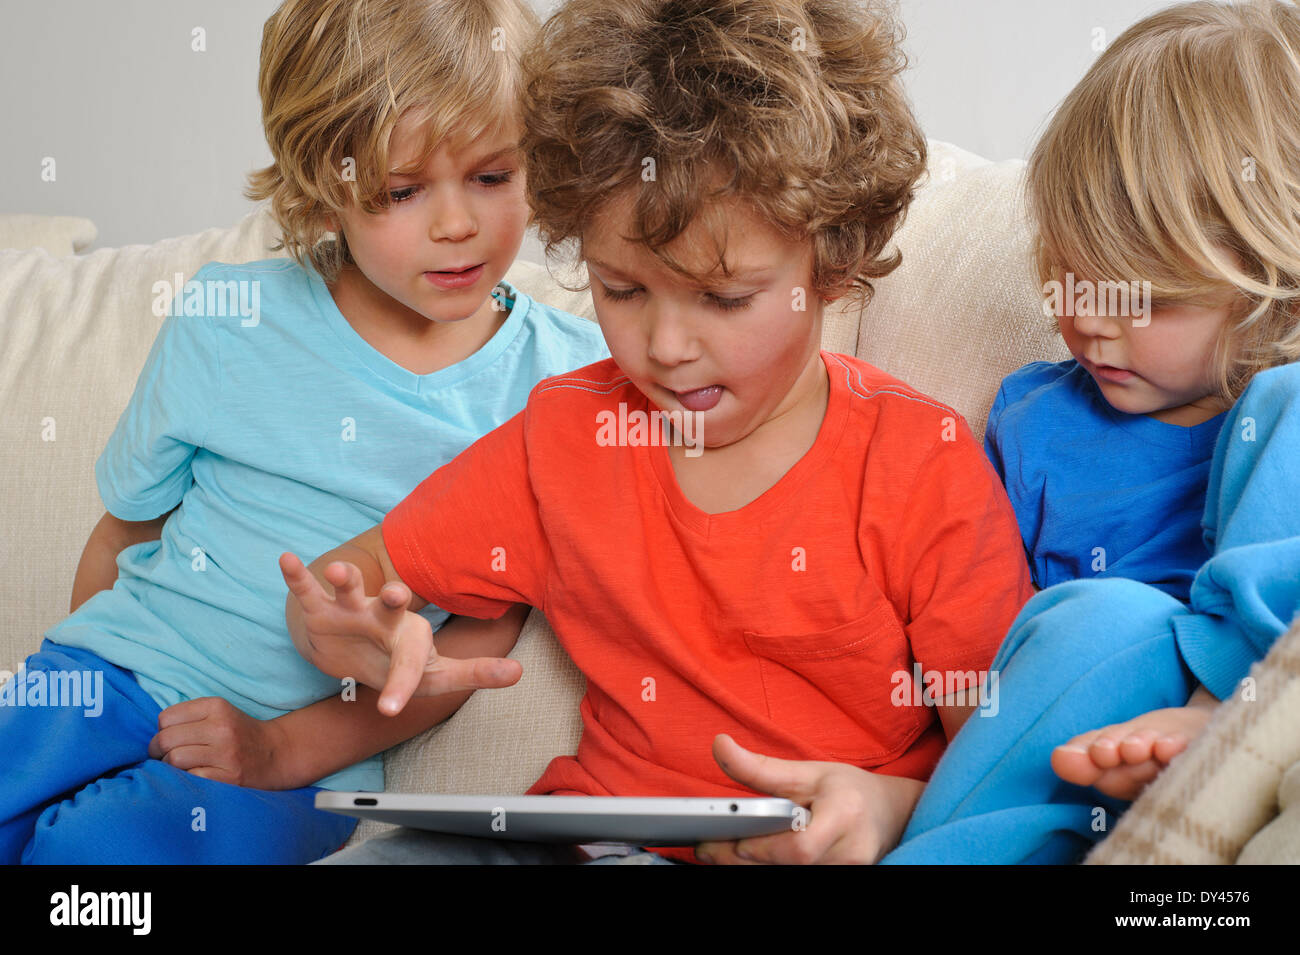 Un 8-9 ans est de jouer à un jeu sur un écran tactile Tablet. Ses jeunes frères sont à regarder attentivement chaque mouvement Banque D'Images